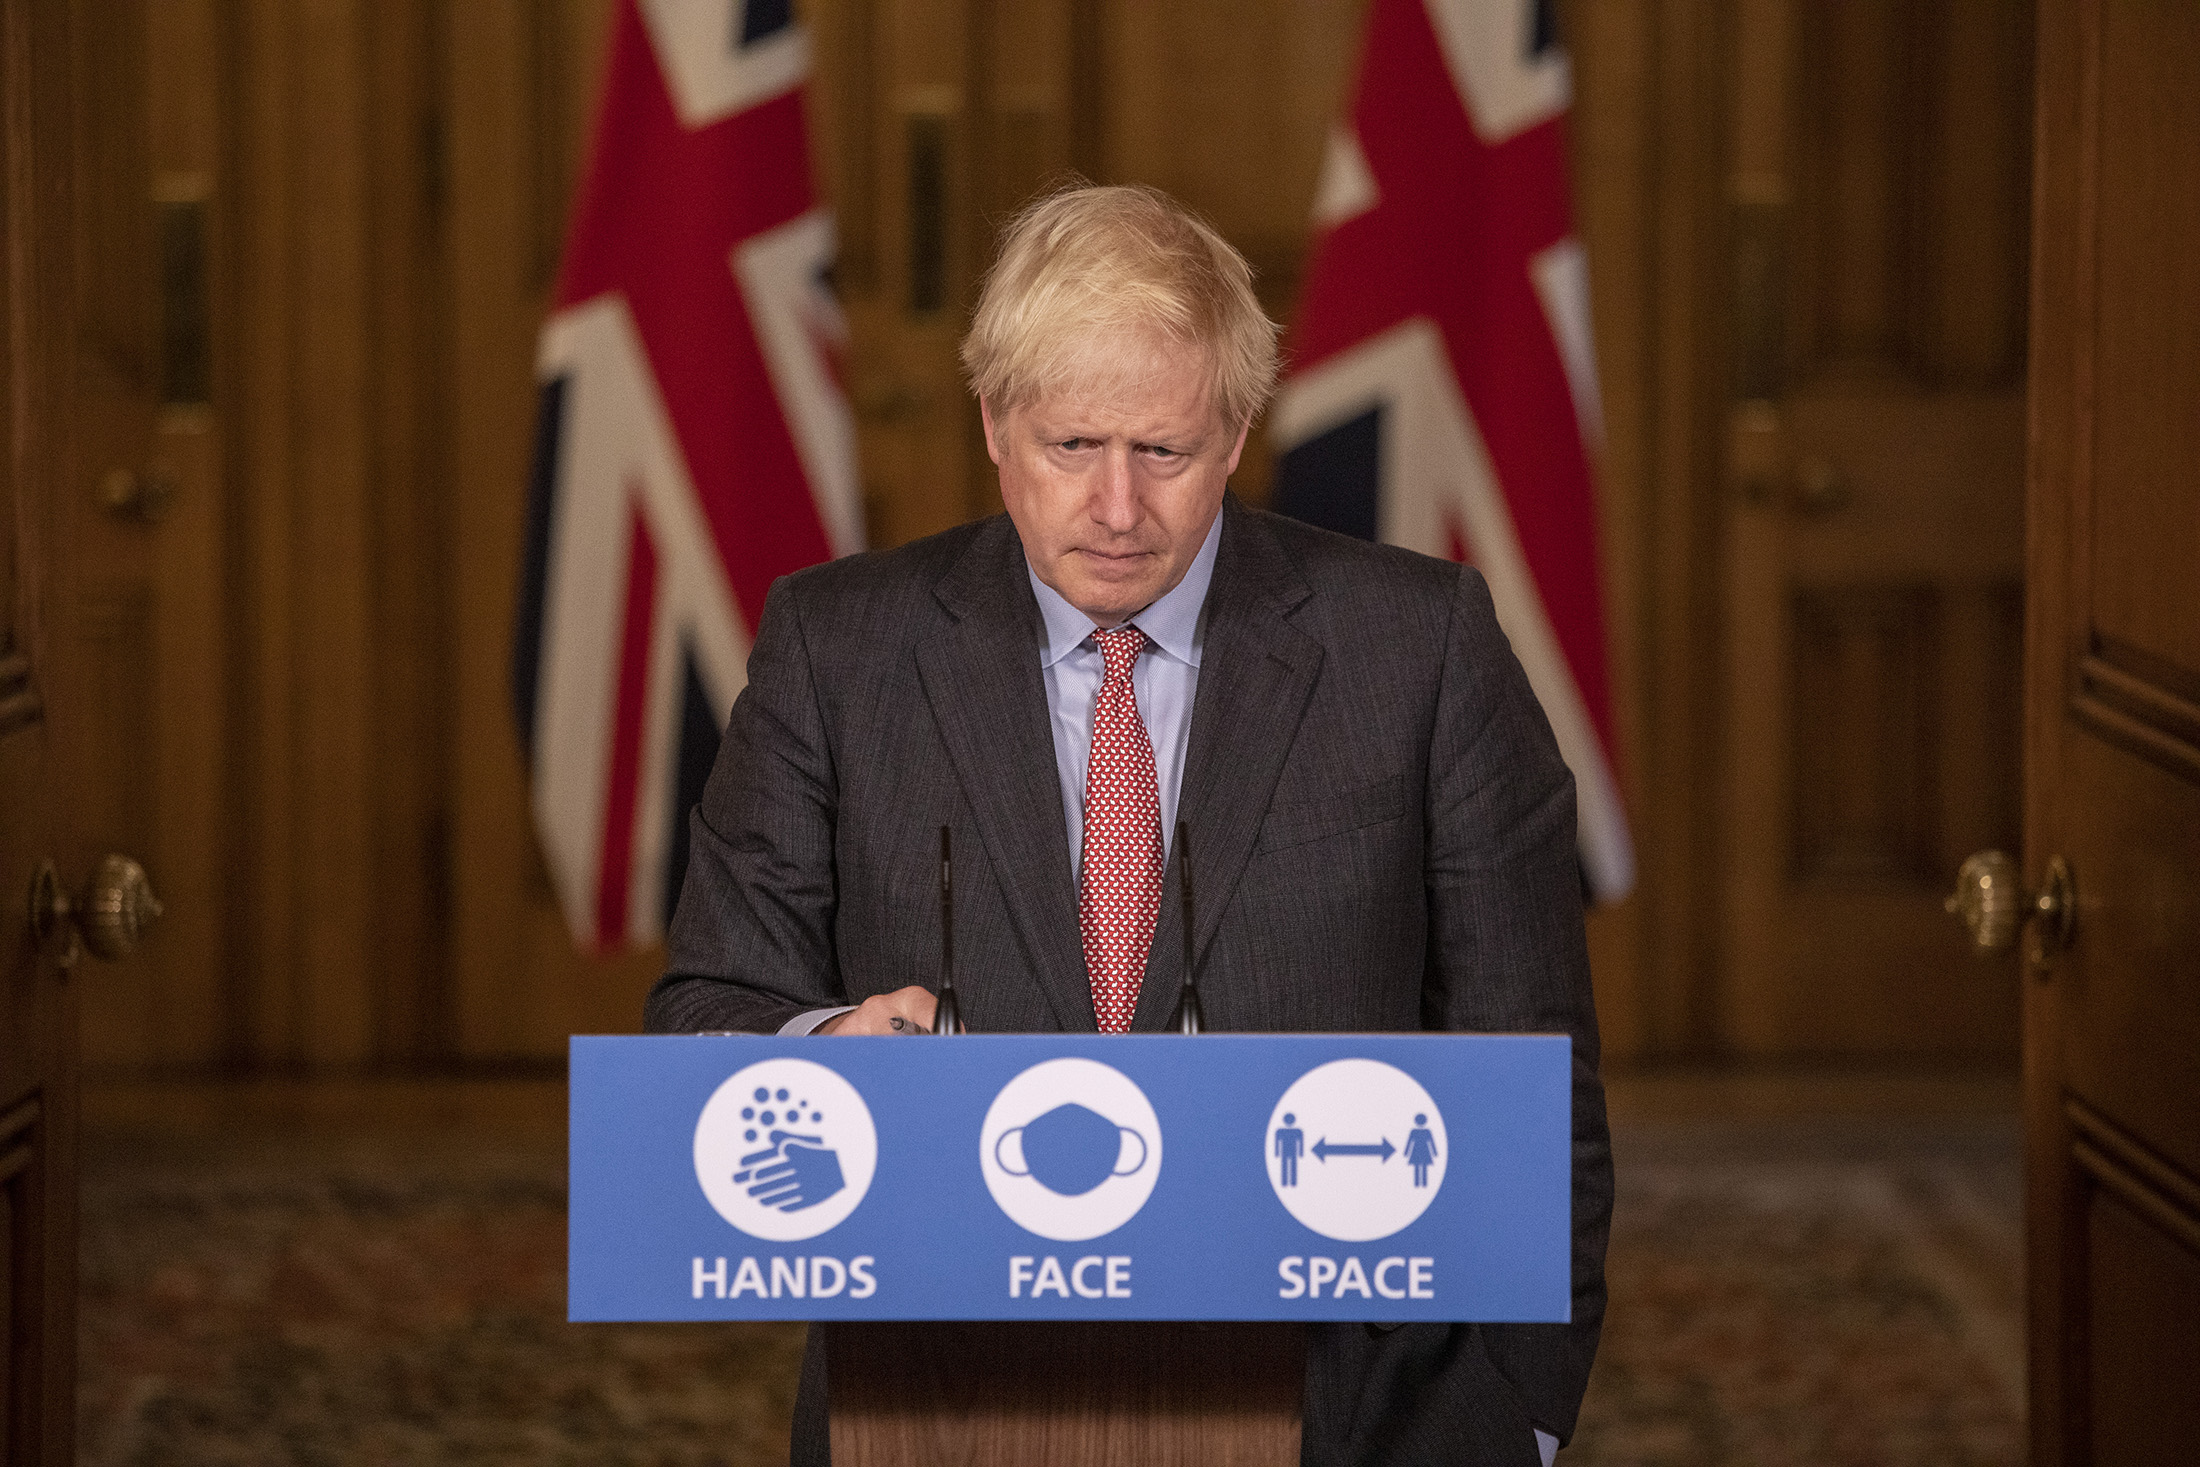 LONDON, ENGLAND - SEPTEMBER 30: Prime Minister Boris Johnson